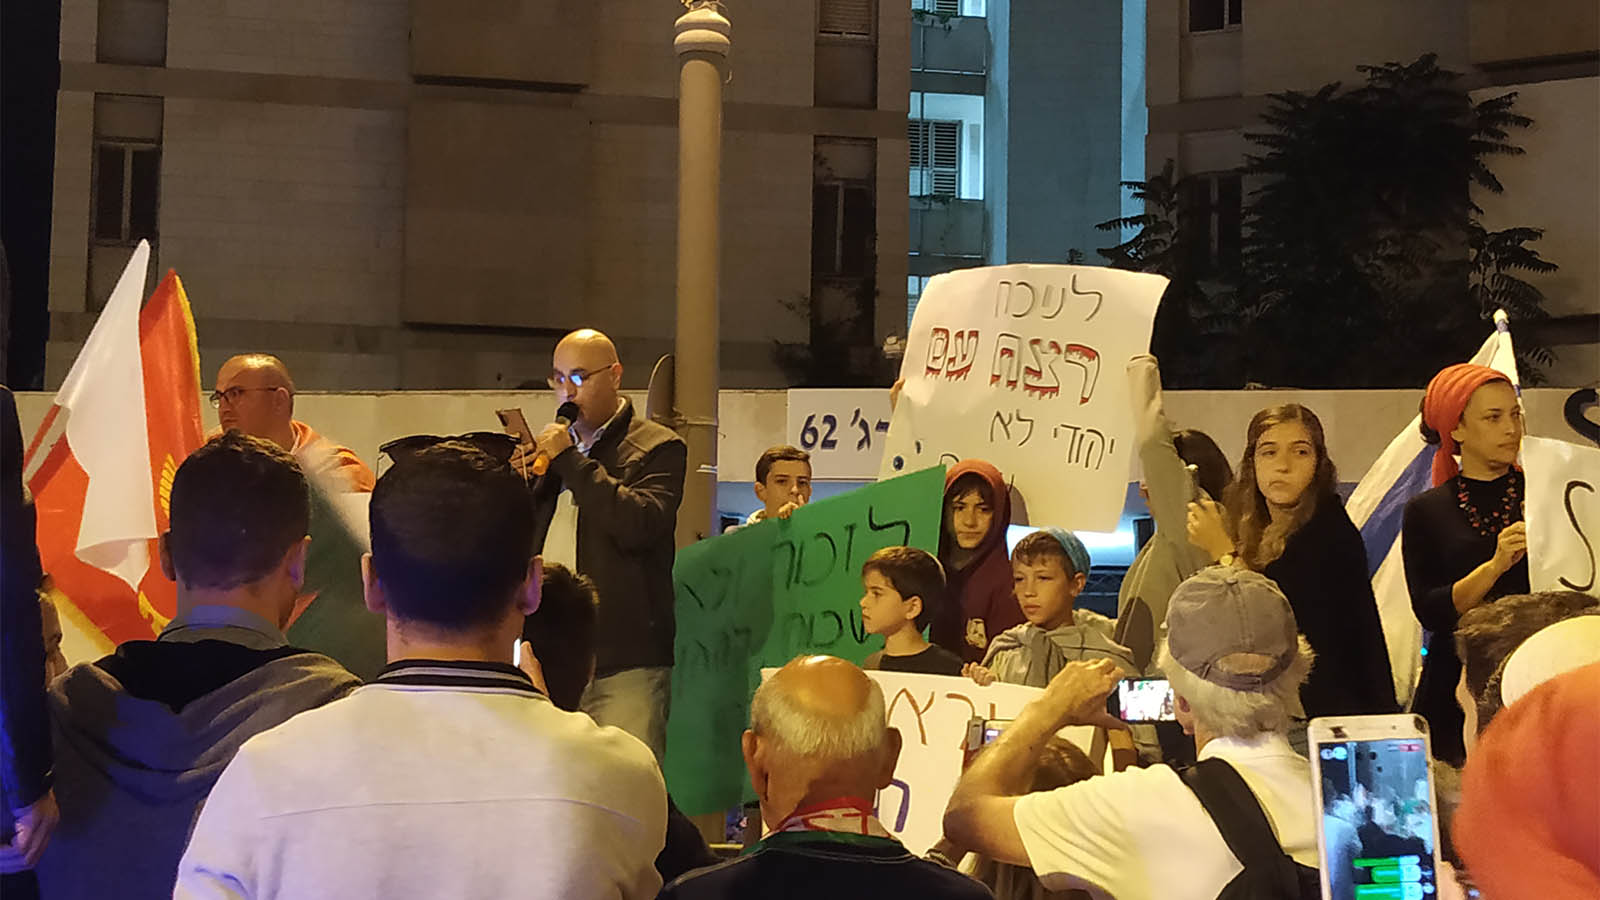 הפגנה נגד הפקרת הכורדים בכיכר פריז, ירושלים, 12 באוקטובר 2019. (צילום:שירי נבון)